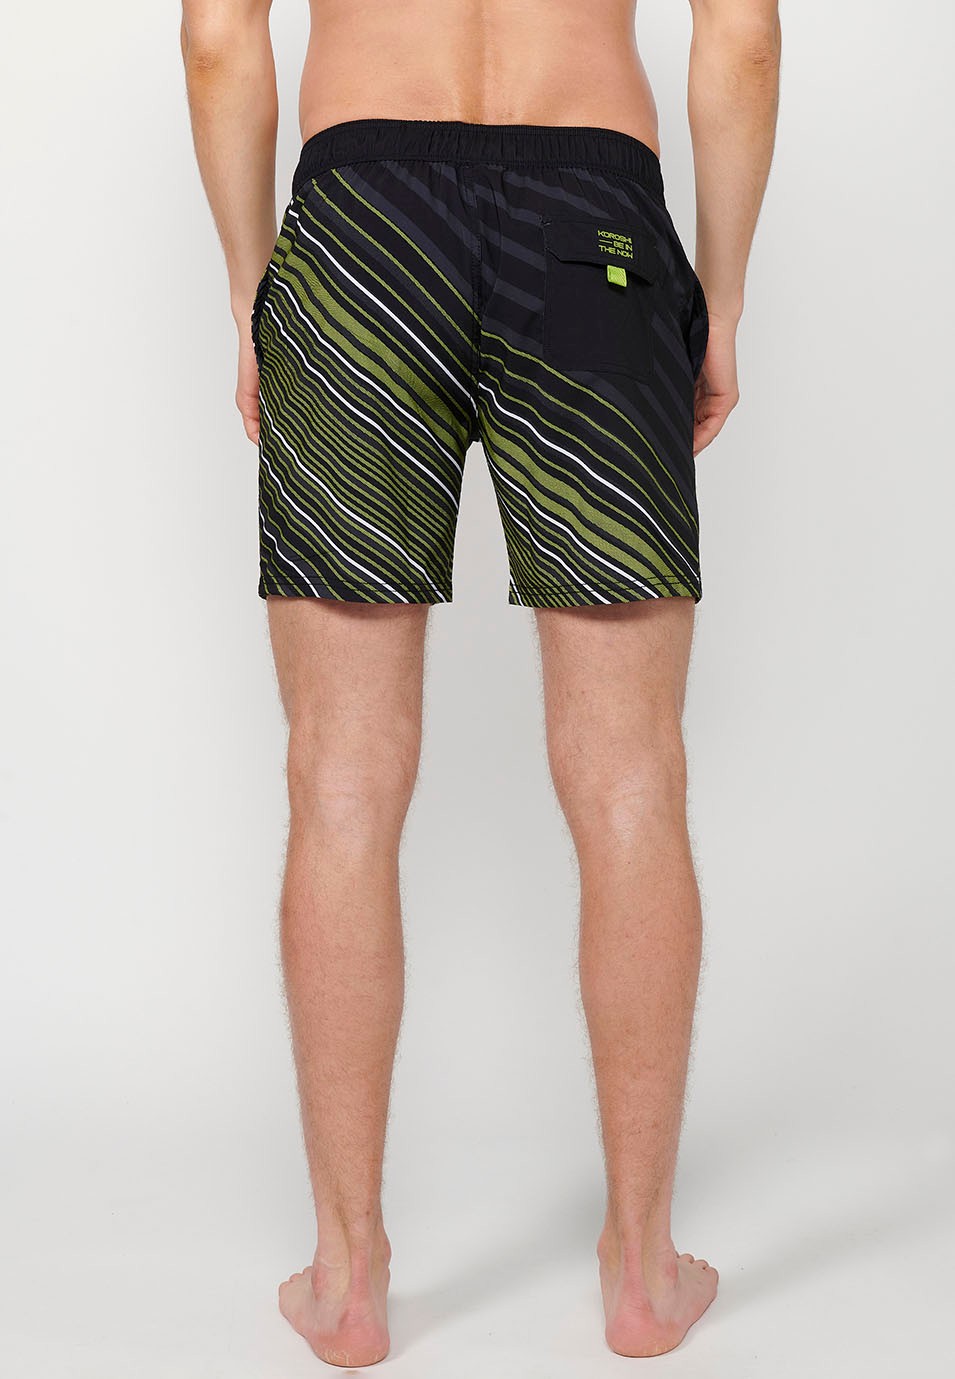 Bedruckter kurzer Badeanzug mit verstellbarer Taille mit Kordelzug und Gesäßtasche und einer Innentasche in Limettenfarbe für Herren 7